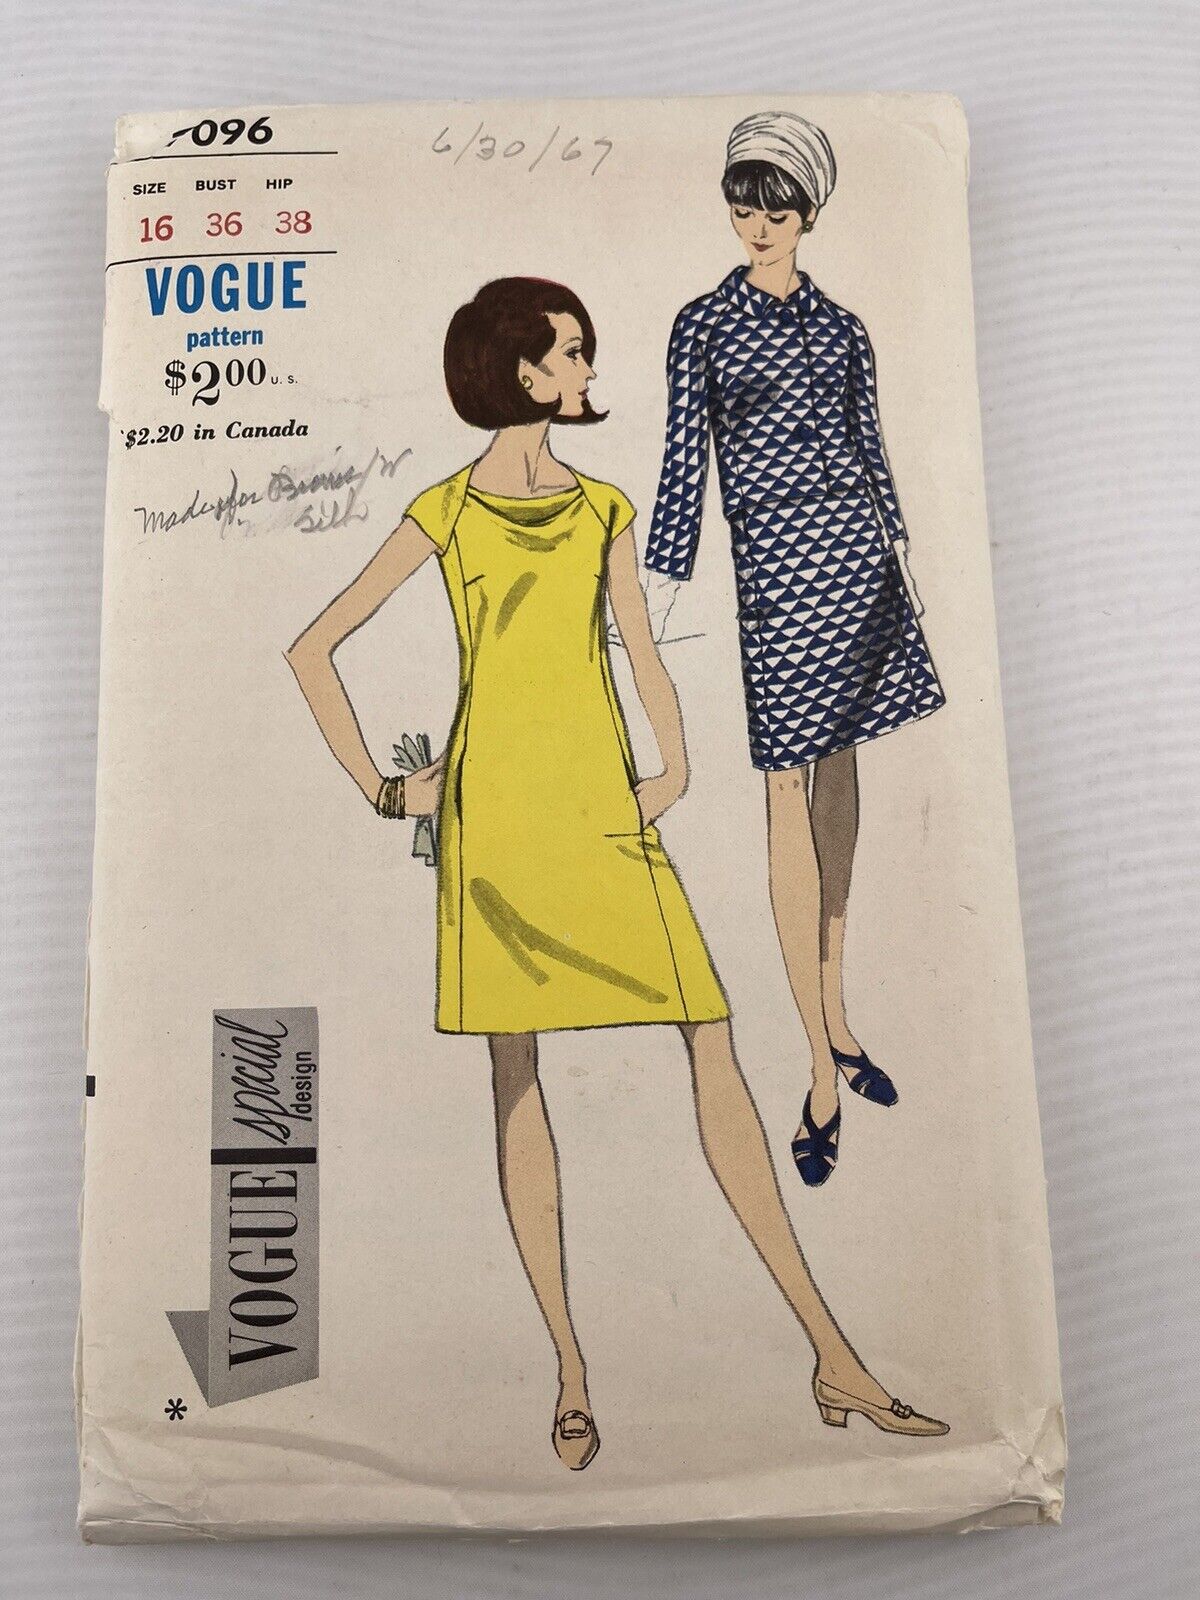 Vogue 7096 Dress & Jacket Pattern Size 16, Bust 36, Hip 38 Vintage 1967